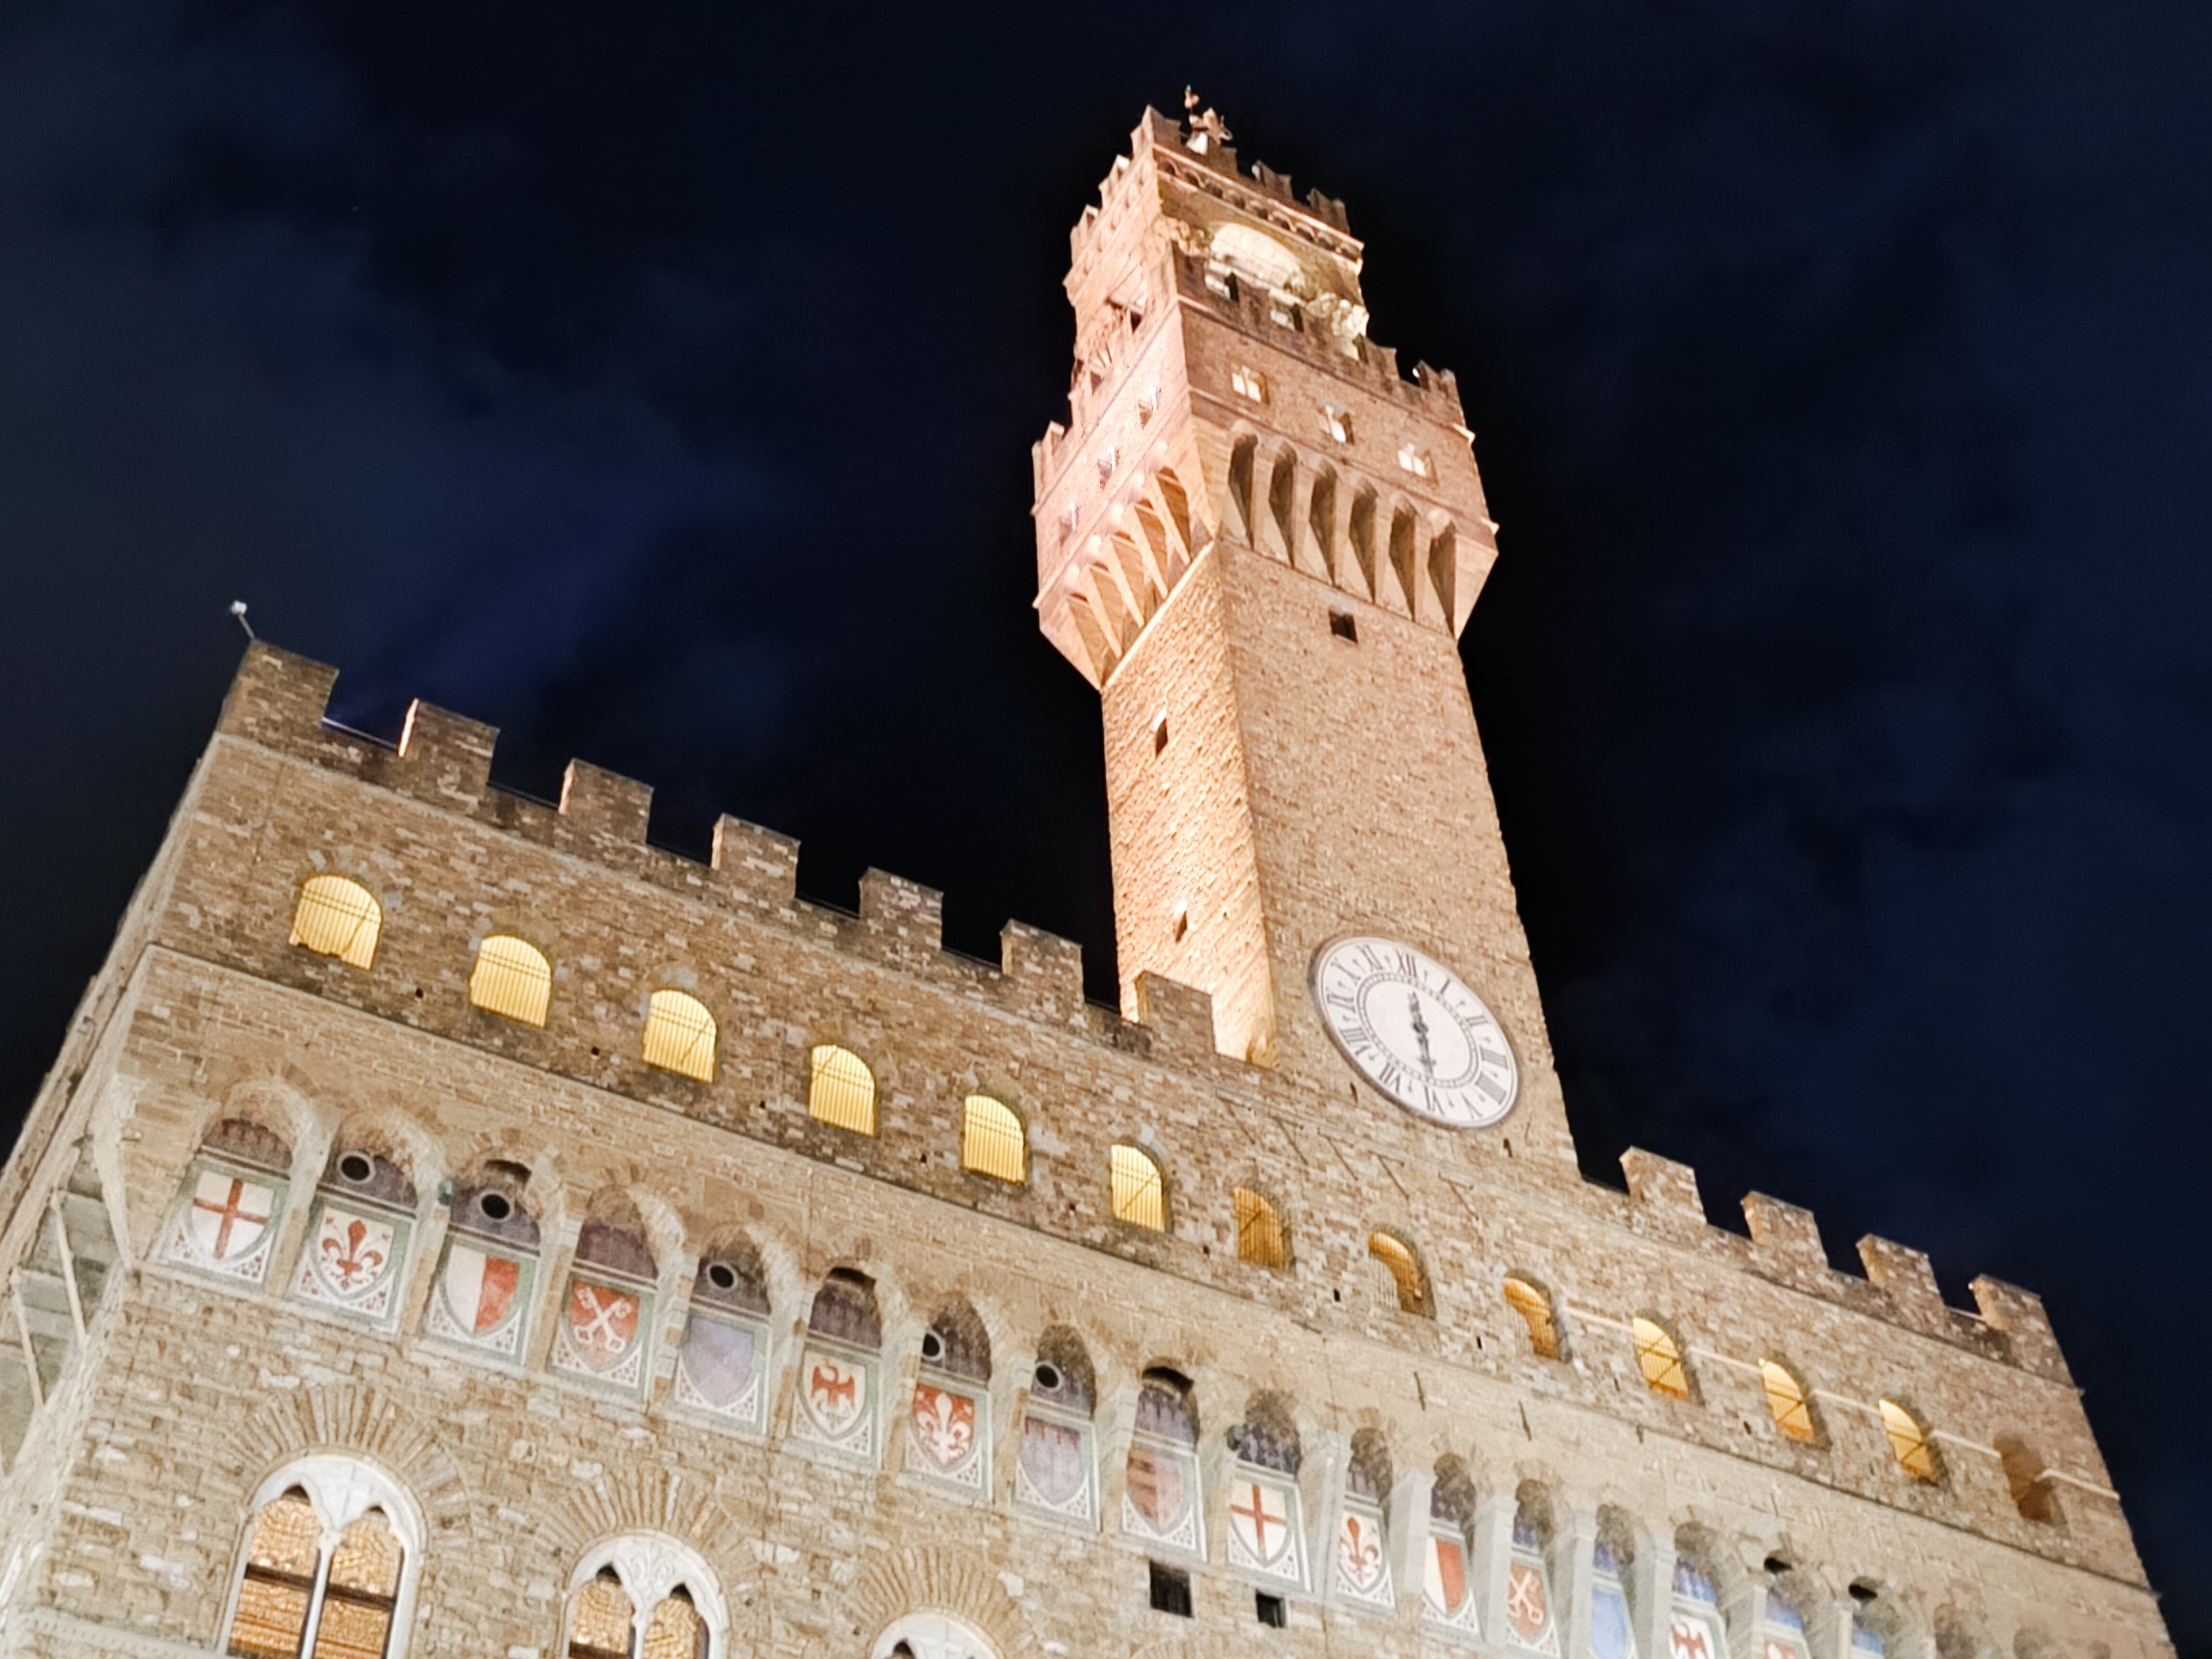 Cosa vedere a Firenze: itinerario a piedi palazzo vecchio